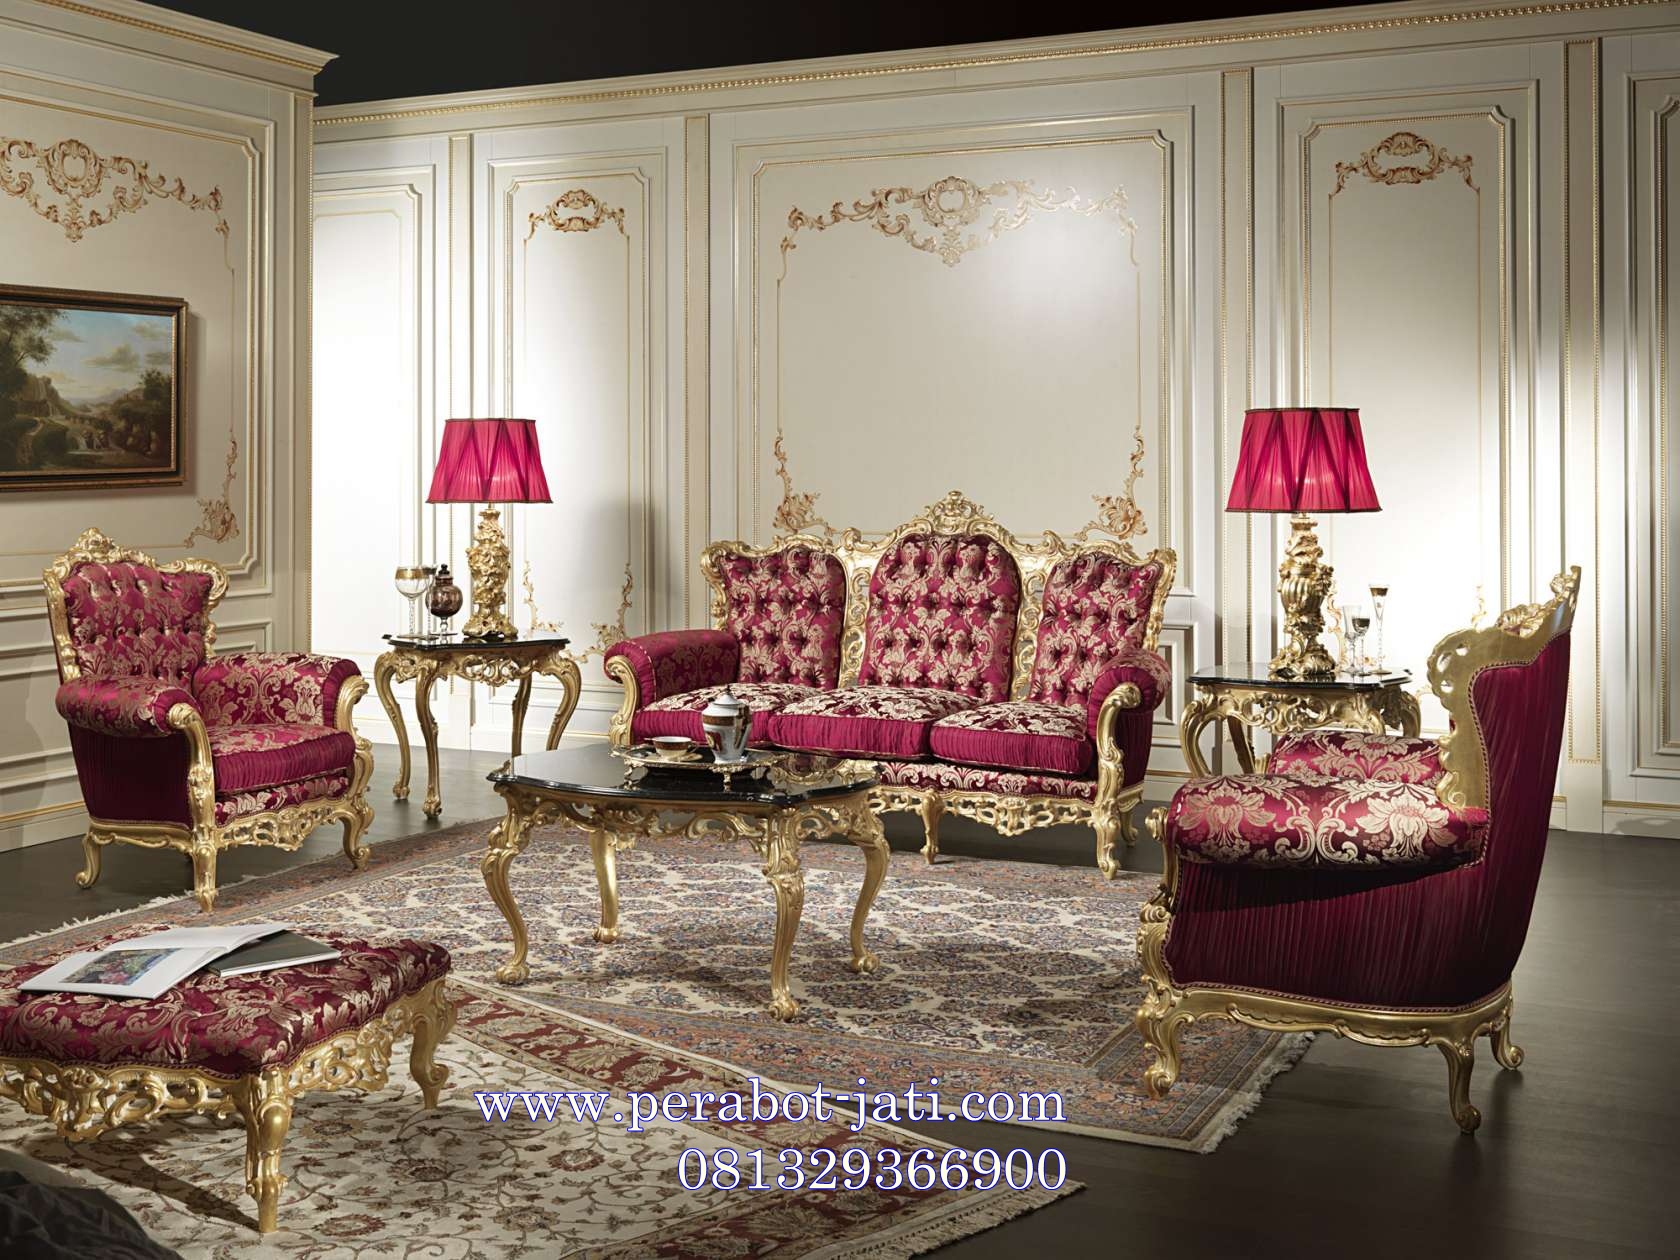 Jual Kursi Sofa Ruang Tamu Klasik Ukir Royal Luxury Murah Perabot